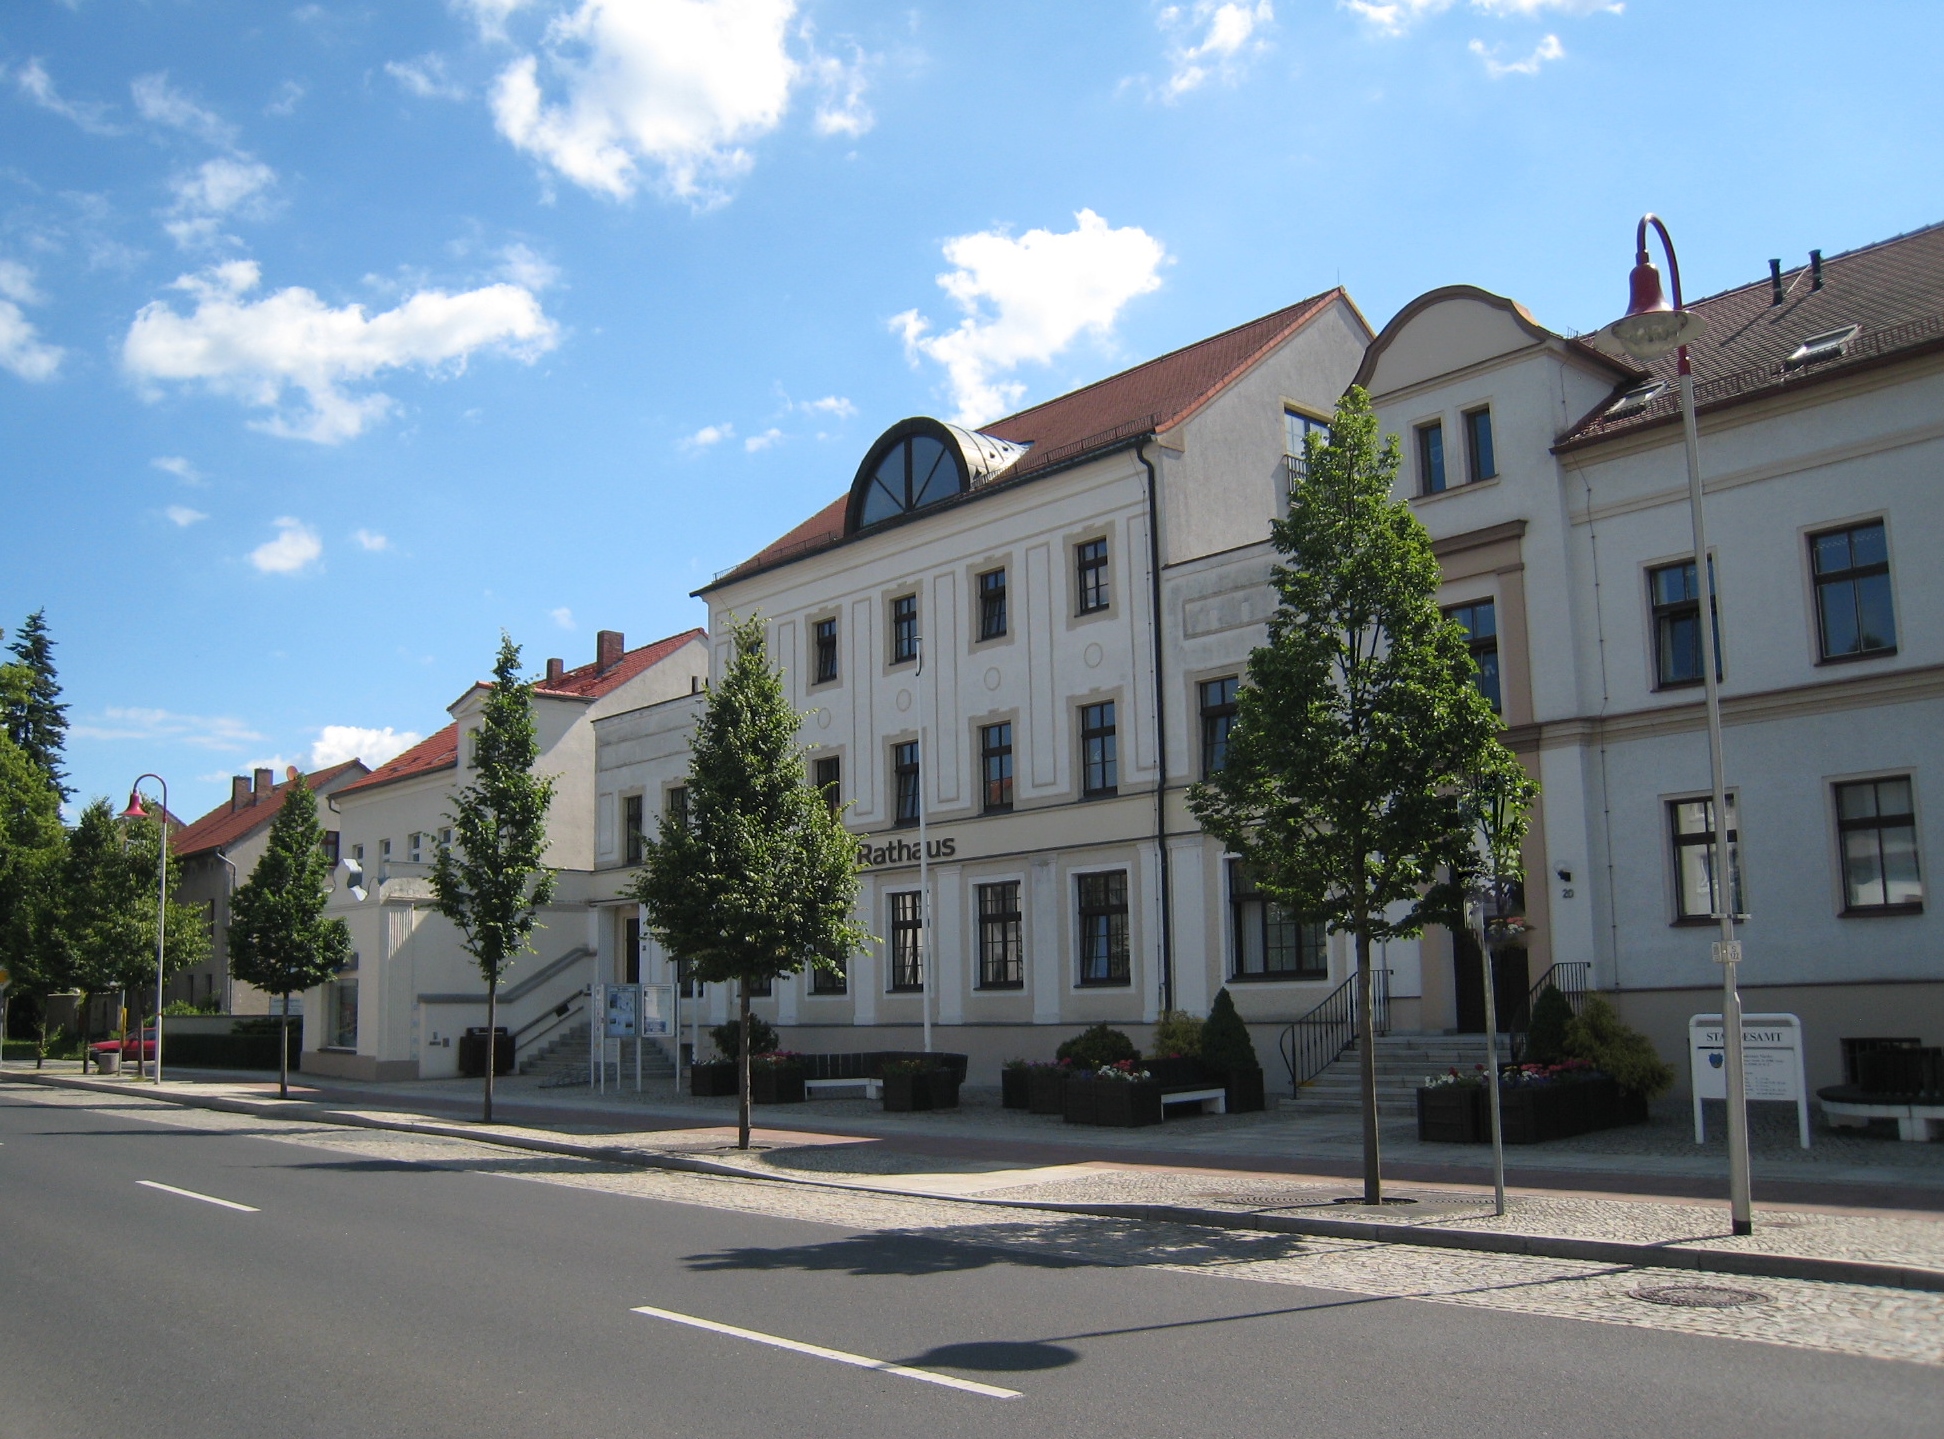 Öffnungszeiten der Stadtverwaltung Niesky - Rathaus Nieksy